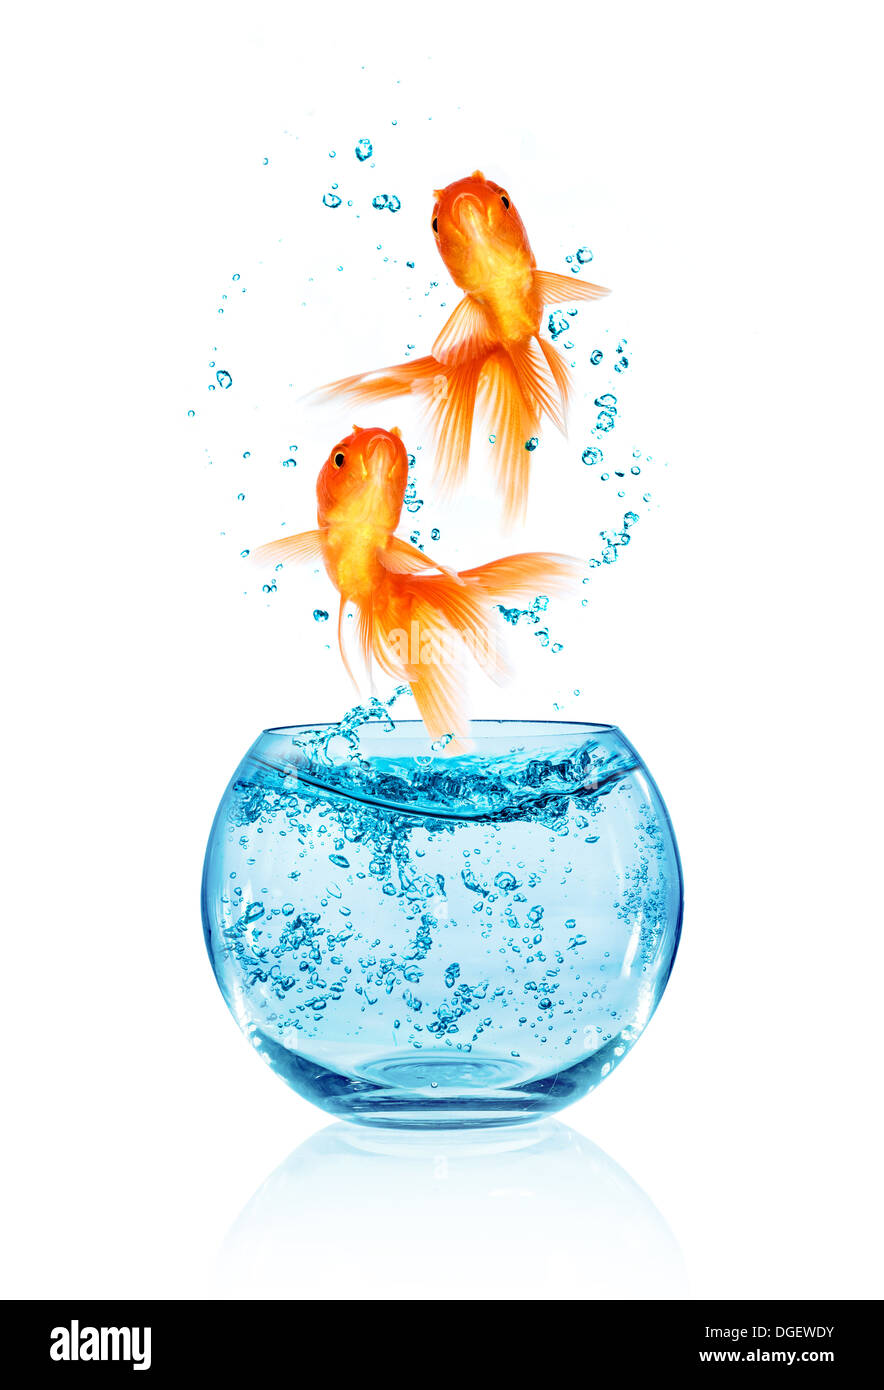 Goldfish saltando fuera del acuario aislado sobre fondo blanco. La búsqueda de la libertad. Foto de stock